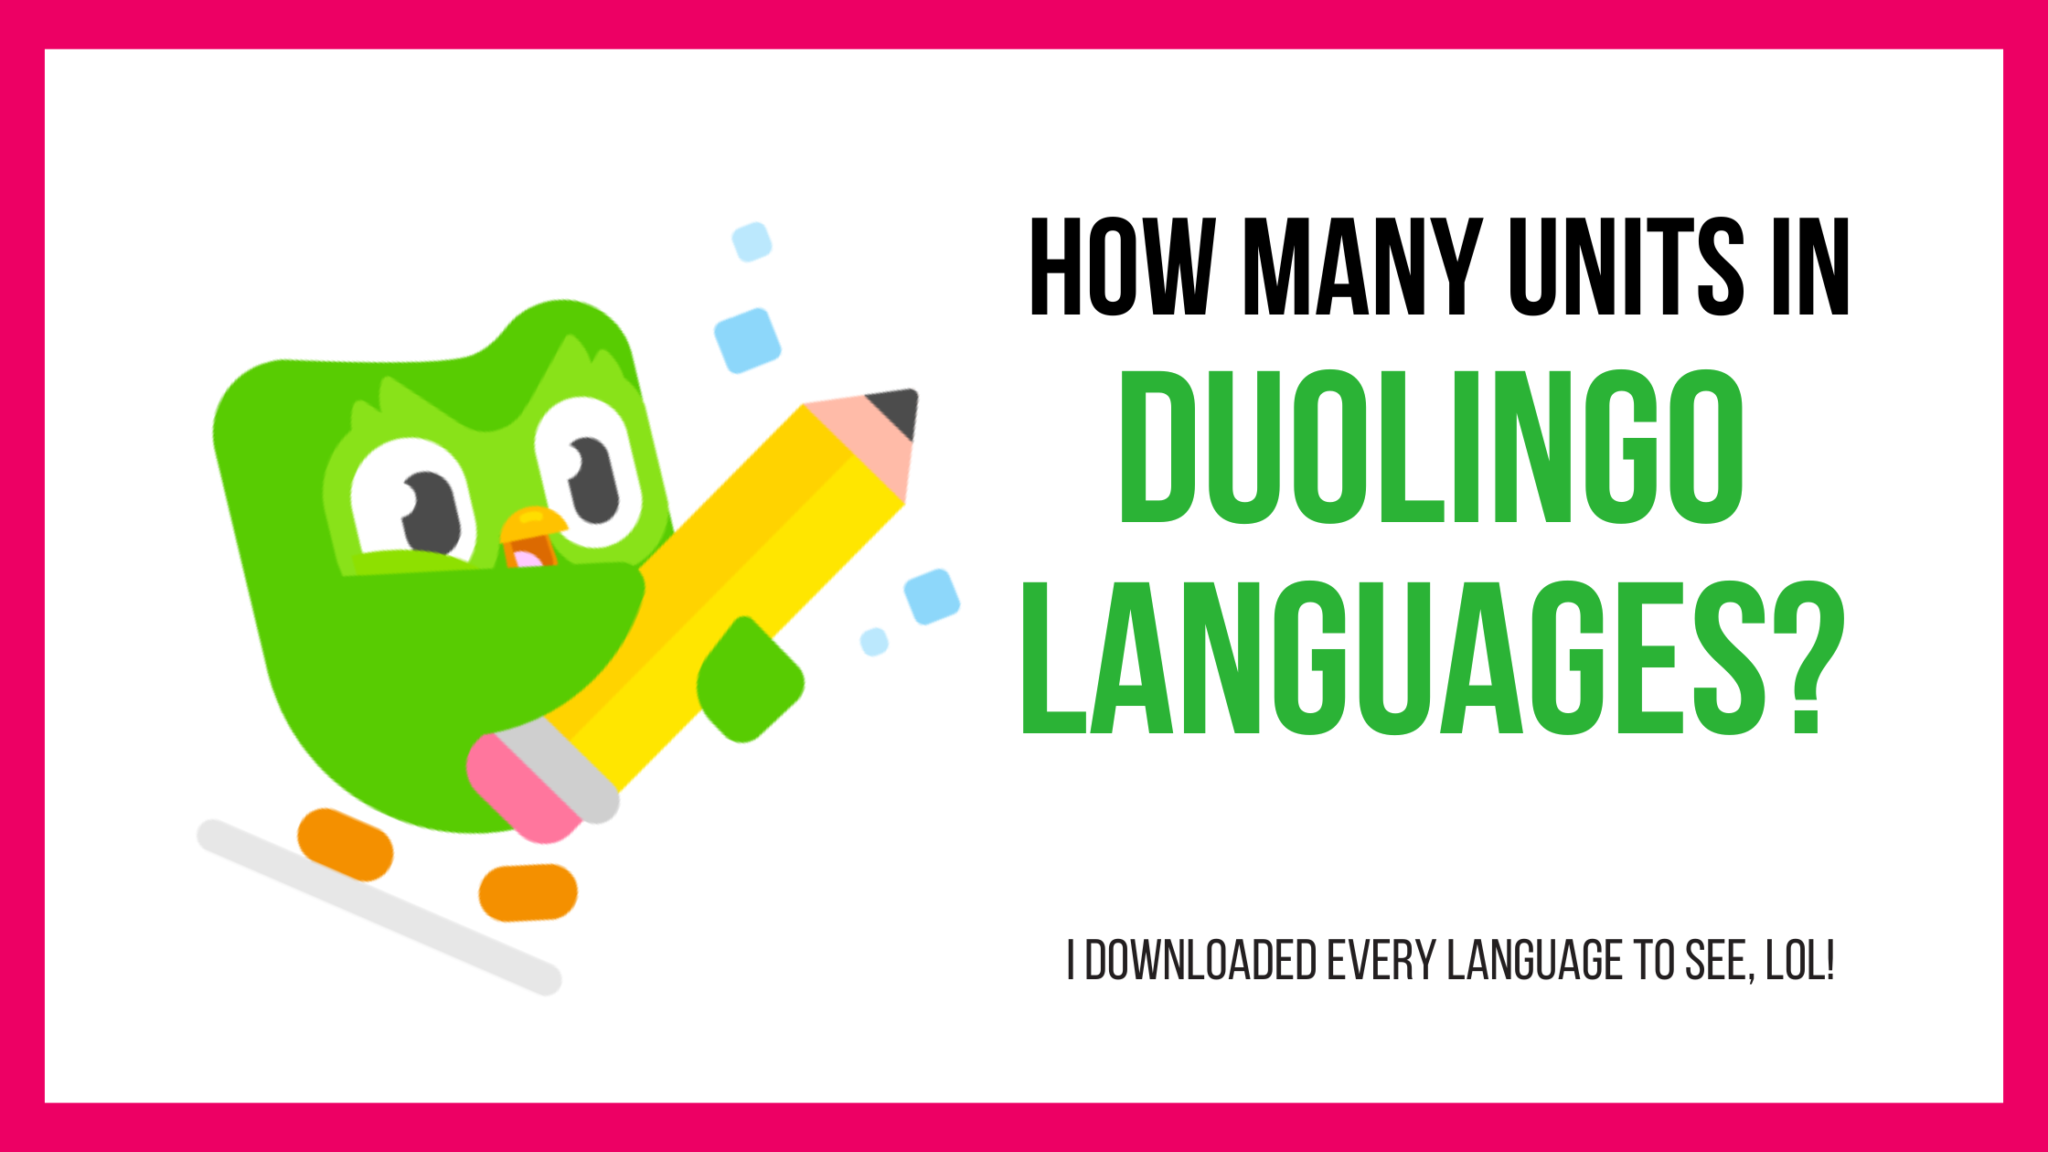 Duolingo Units Per Language How Many Units in Duolingo Languages